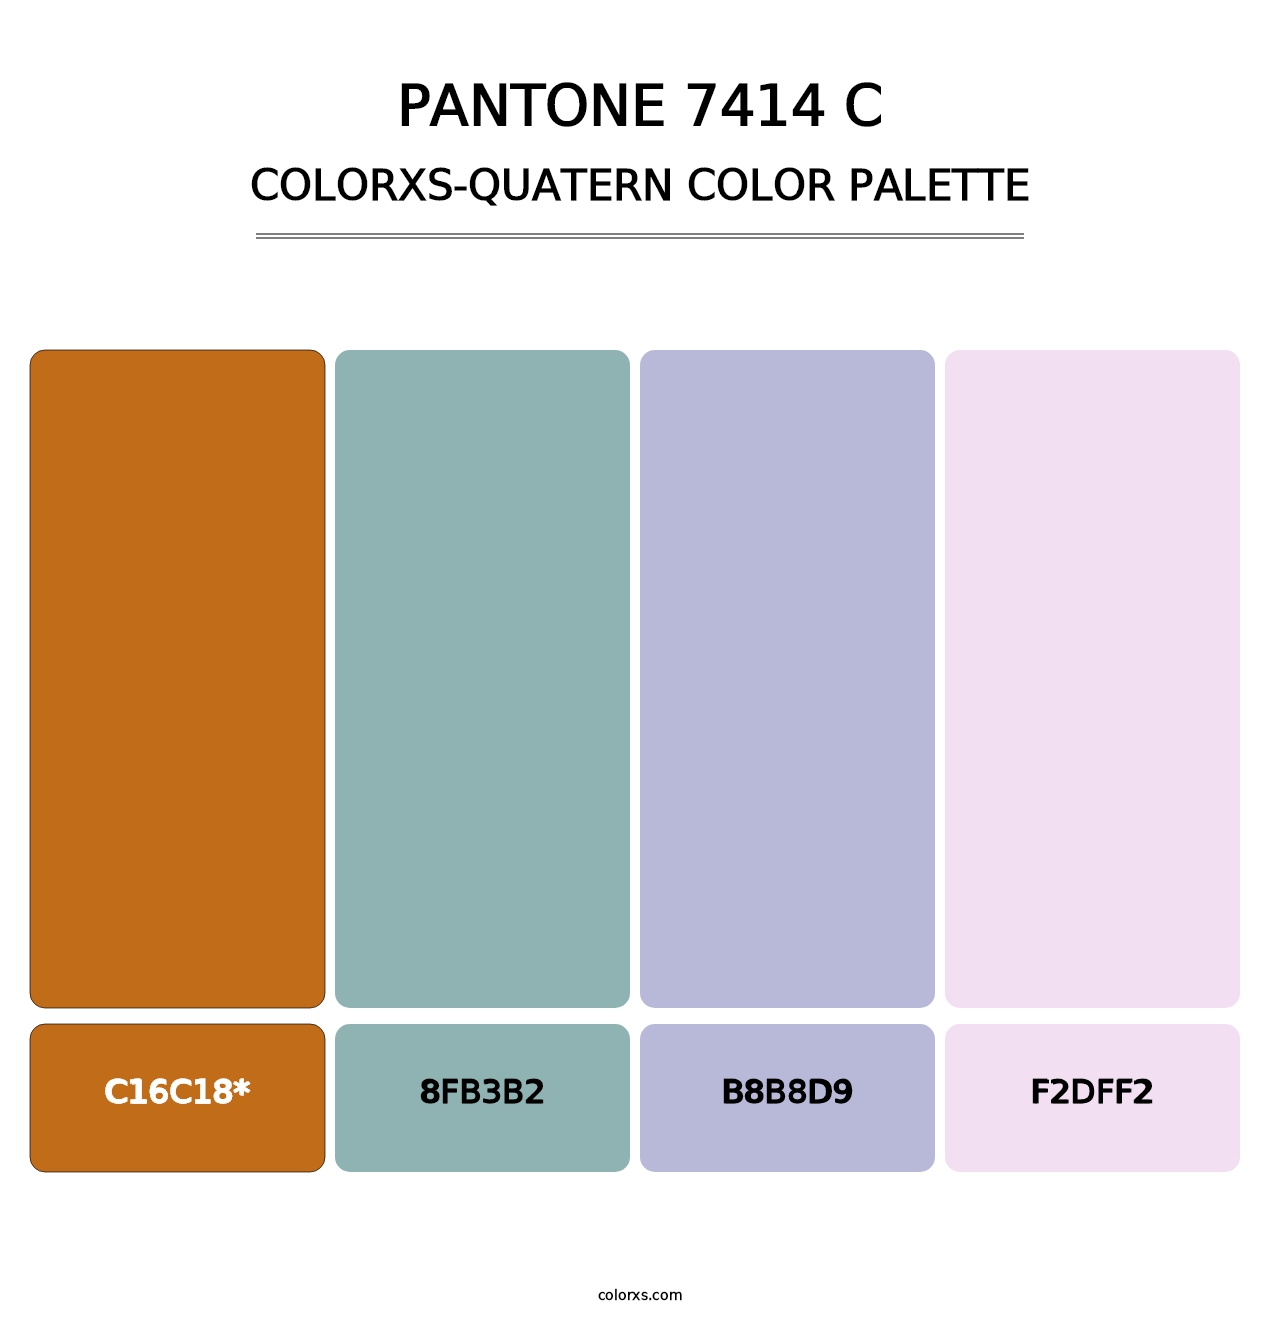 PANTONE 7414 C - Colorxs Quatern Palette